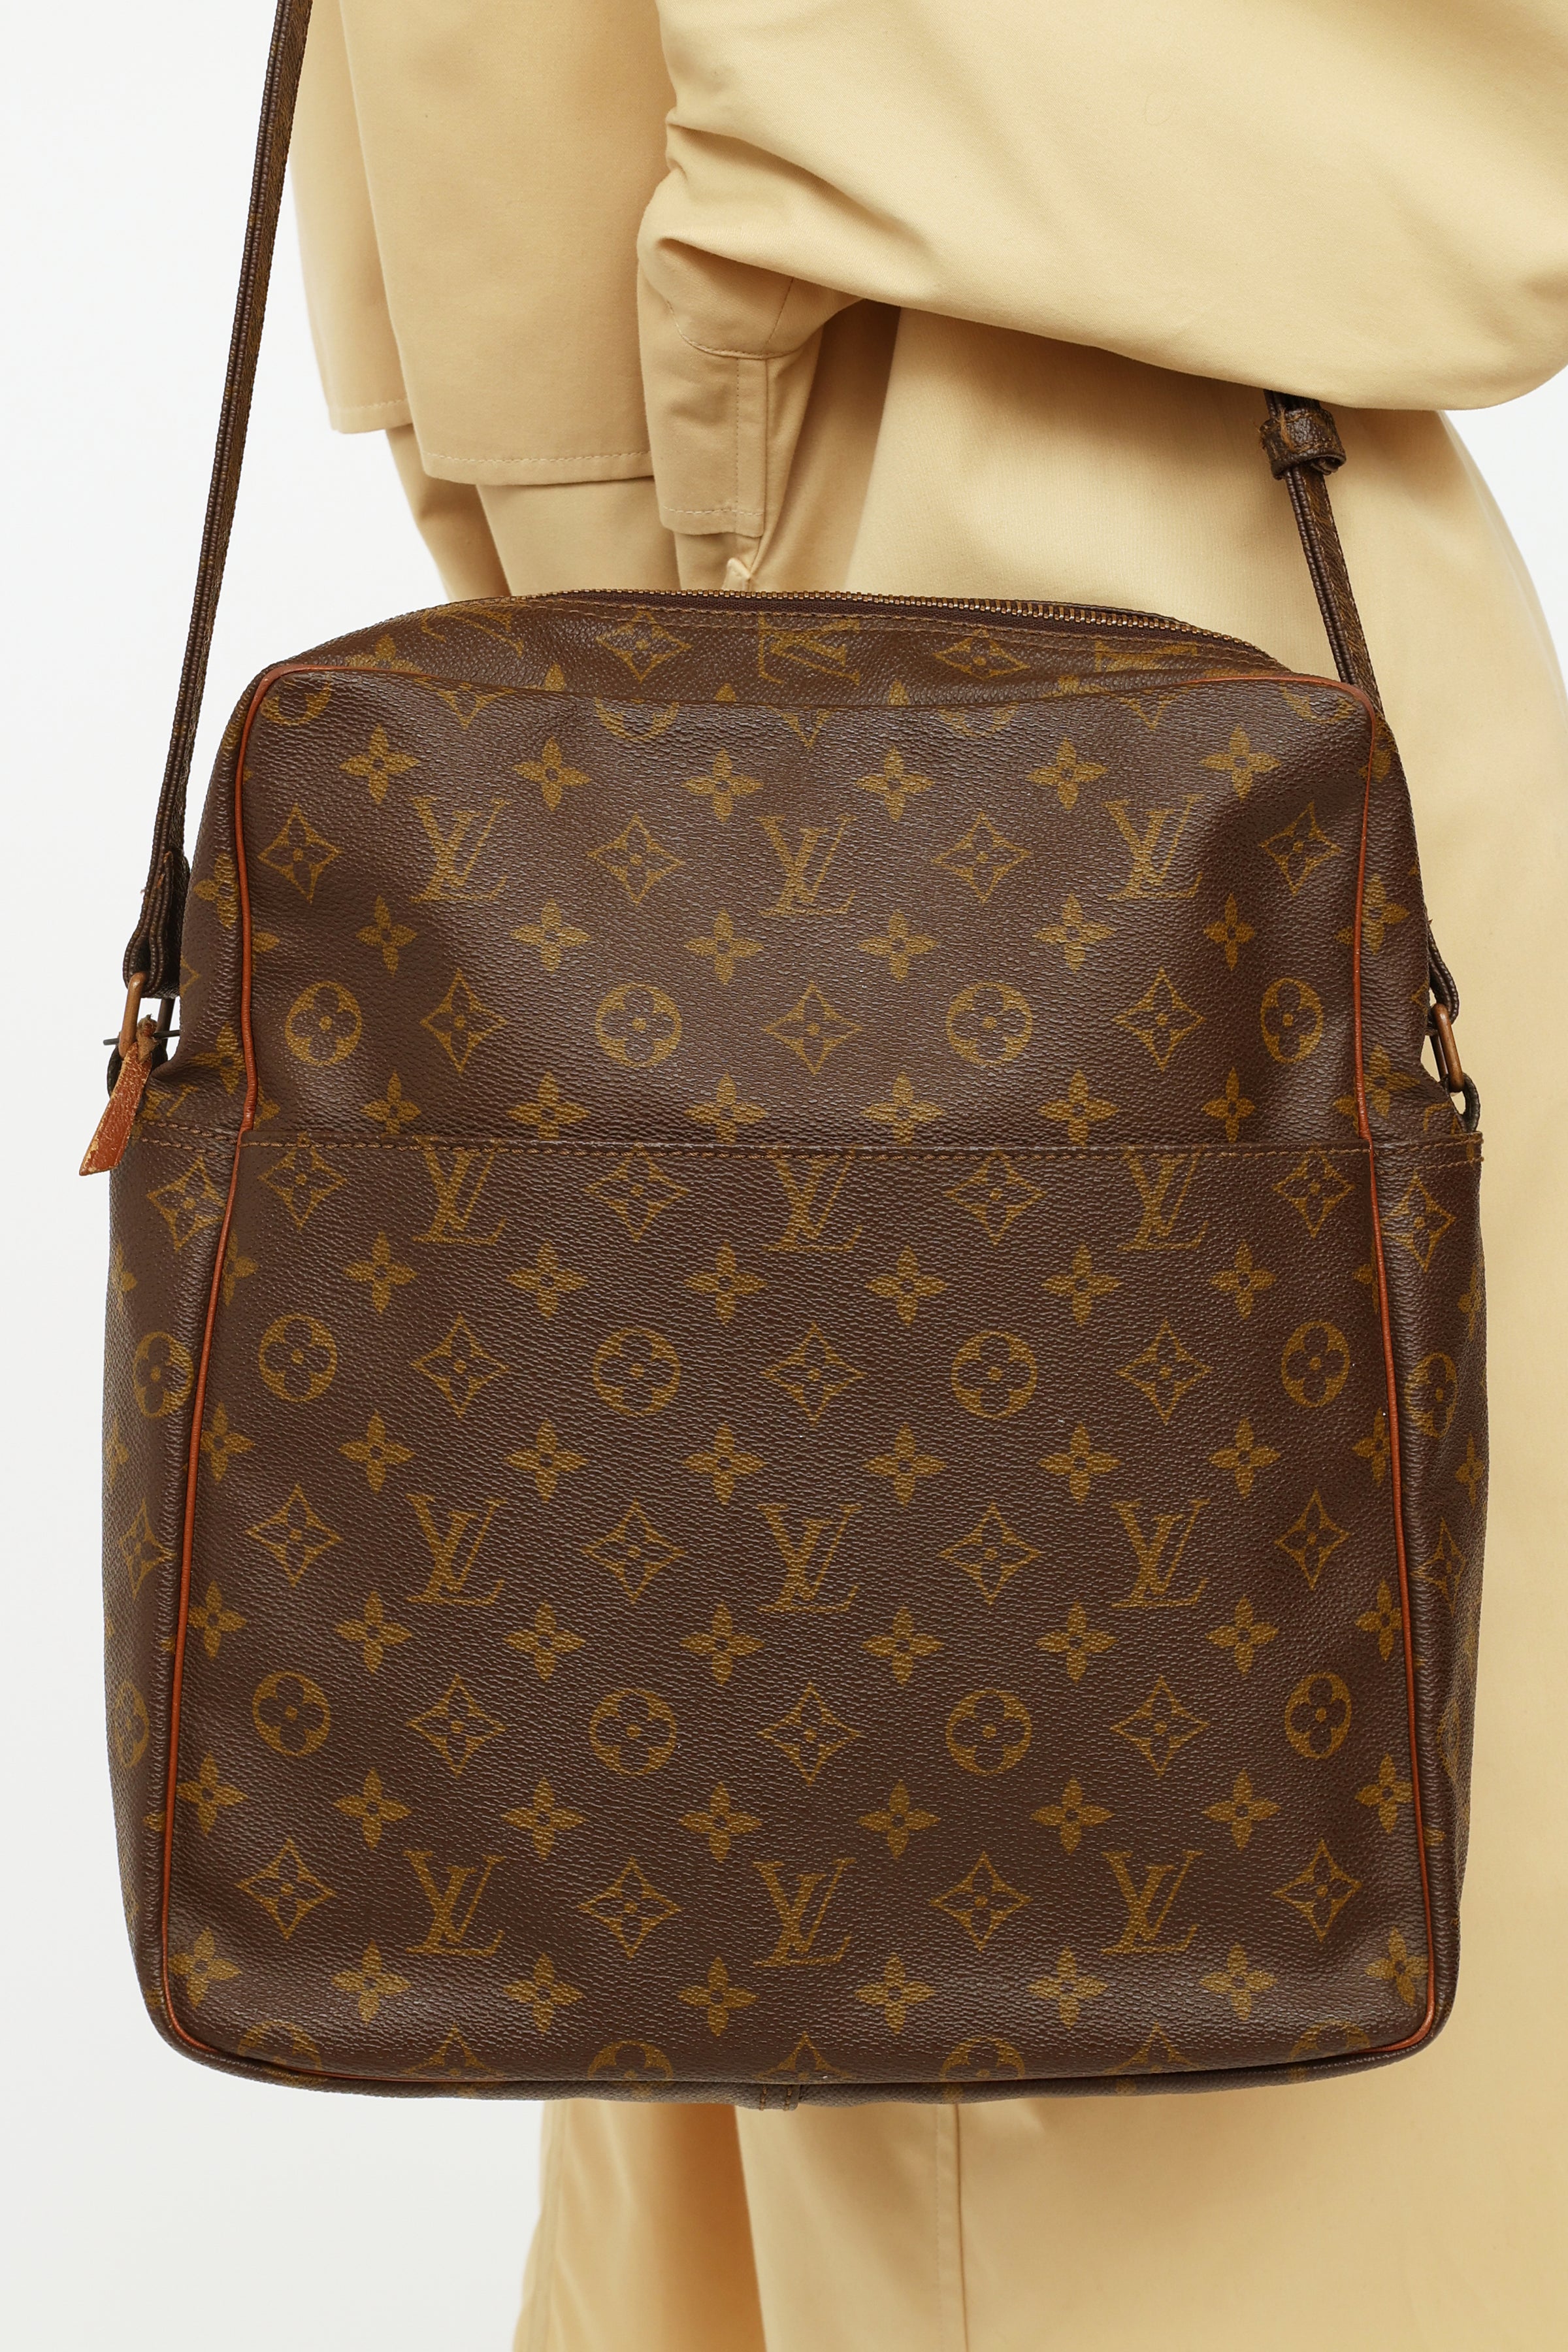 Louis Vuitton: An Online Exclusive: The Marceau Bag